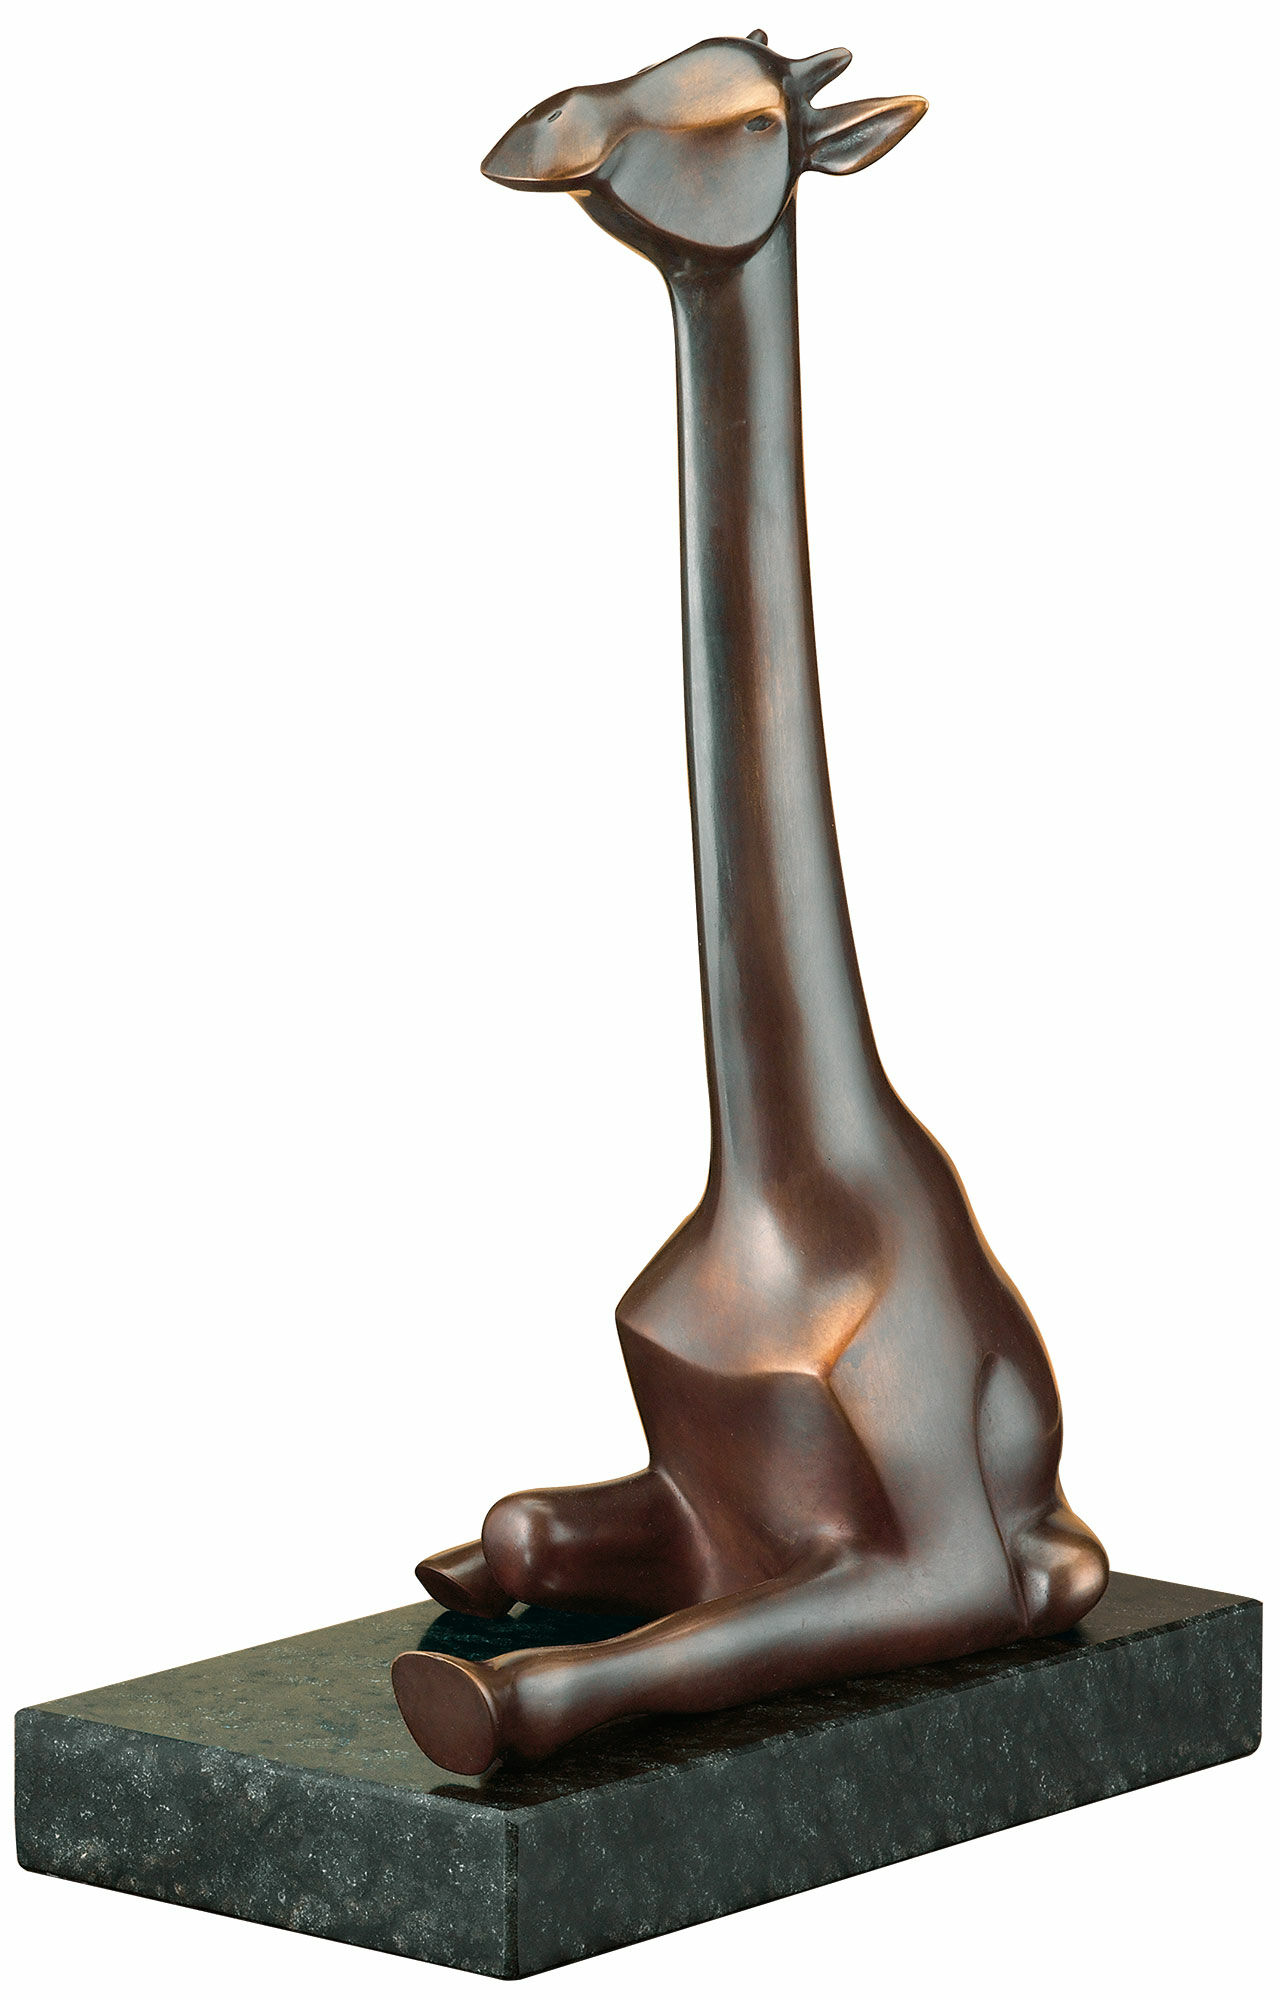 Skulptur "Giraffen", bronze von Evert den Hartog